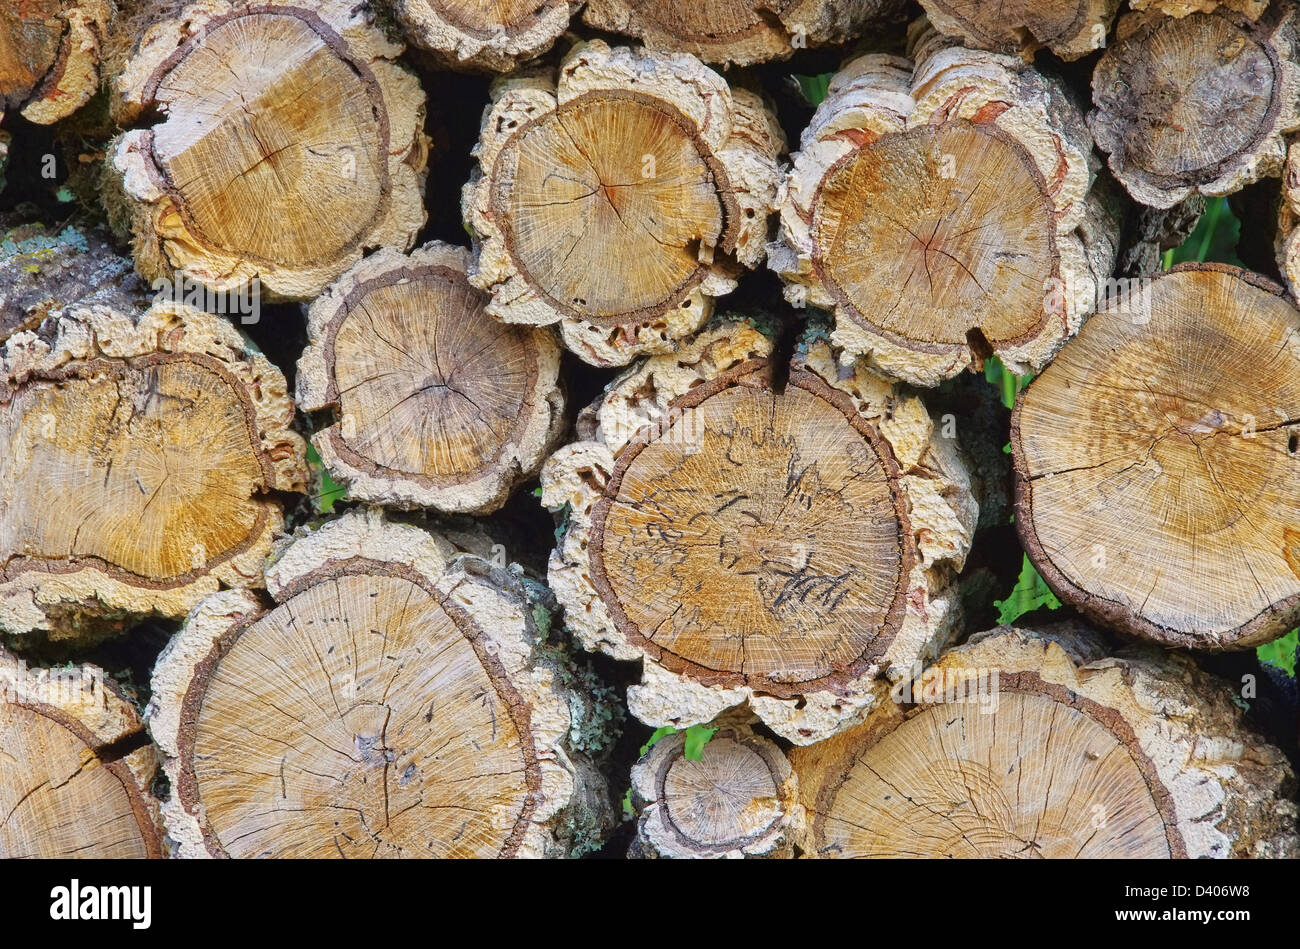 Holzstapel Korkeiche - pile de bois de chêne liège 03 Banque D'Images